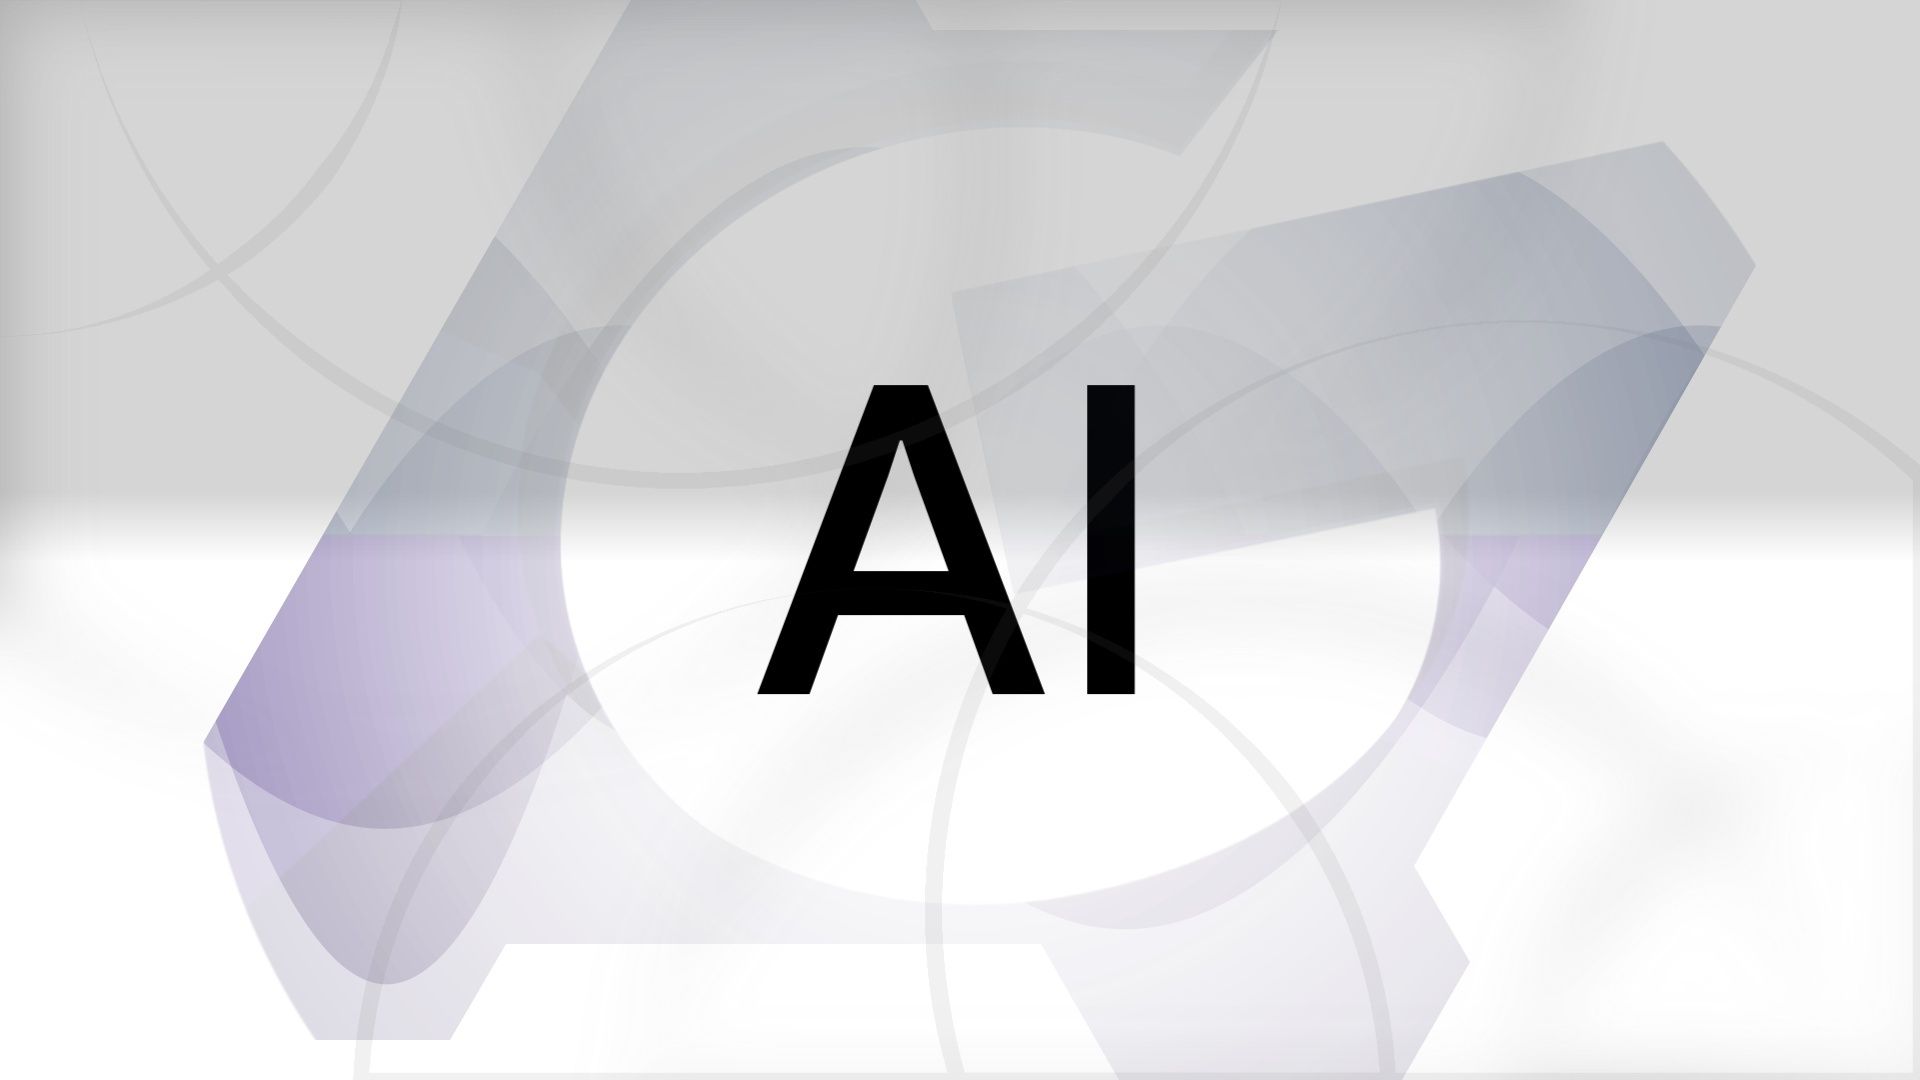 As iniciais 'AI' contra um fundo cinza claro com o logotipo da Android Police visível